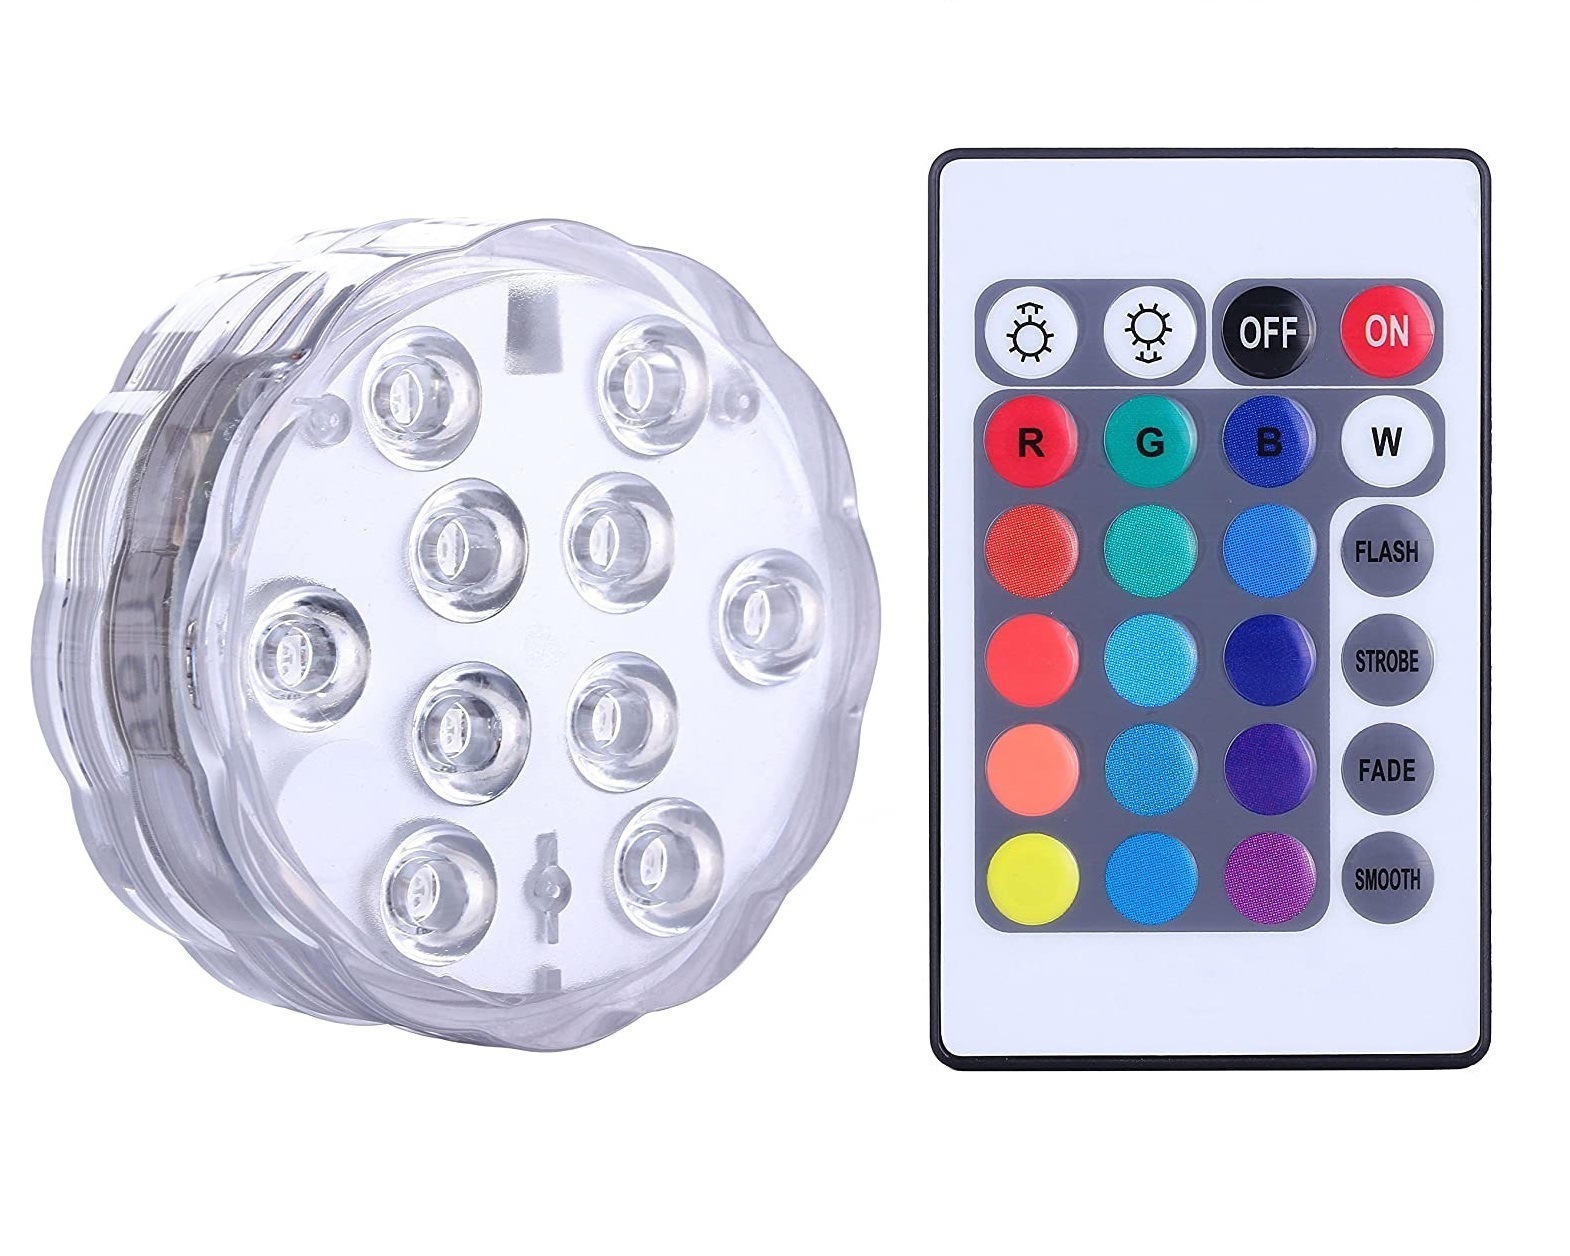 IP68 wasserdicht, mehrfarbig, tauchfähig, 10 LED-Leuchten, Unterwasser-Nachtlampe, Teelicht, Vase, Schüssel, Party, Hochzeit, Weihnachtsdekoration